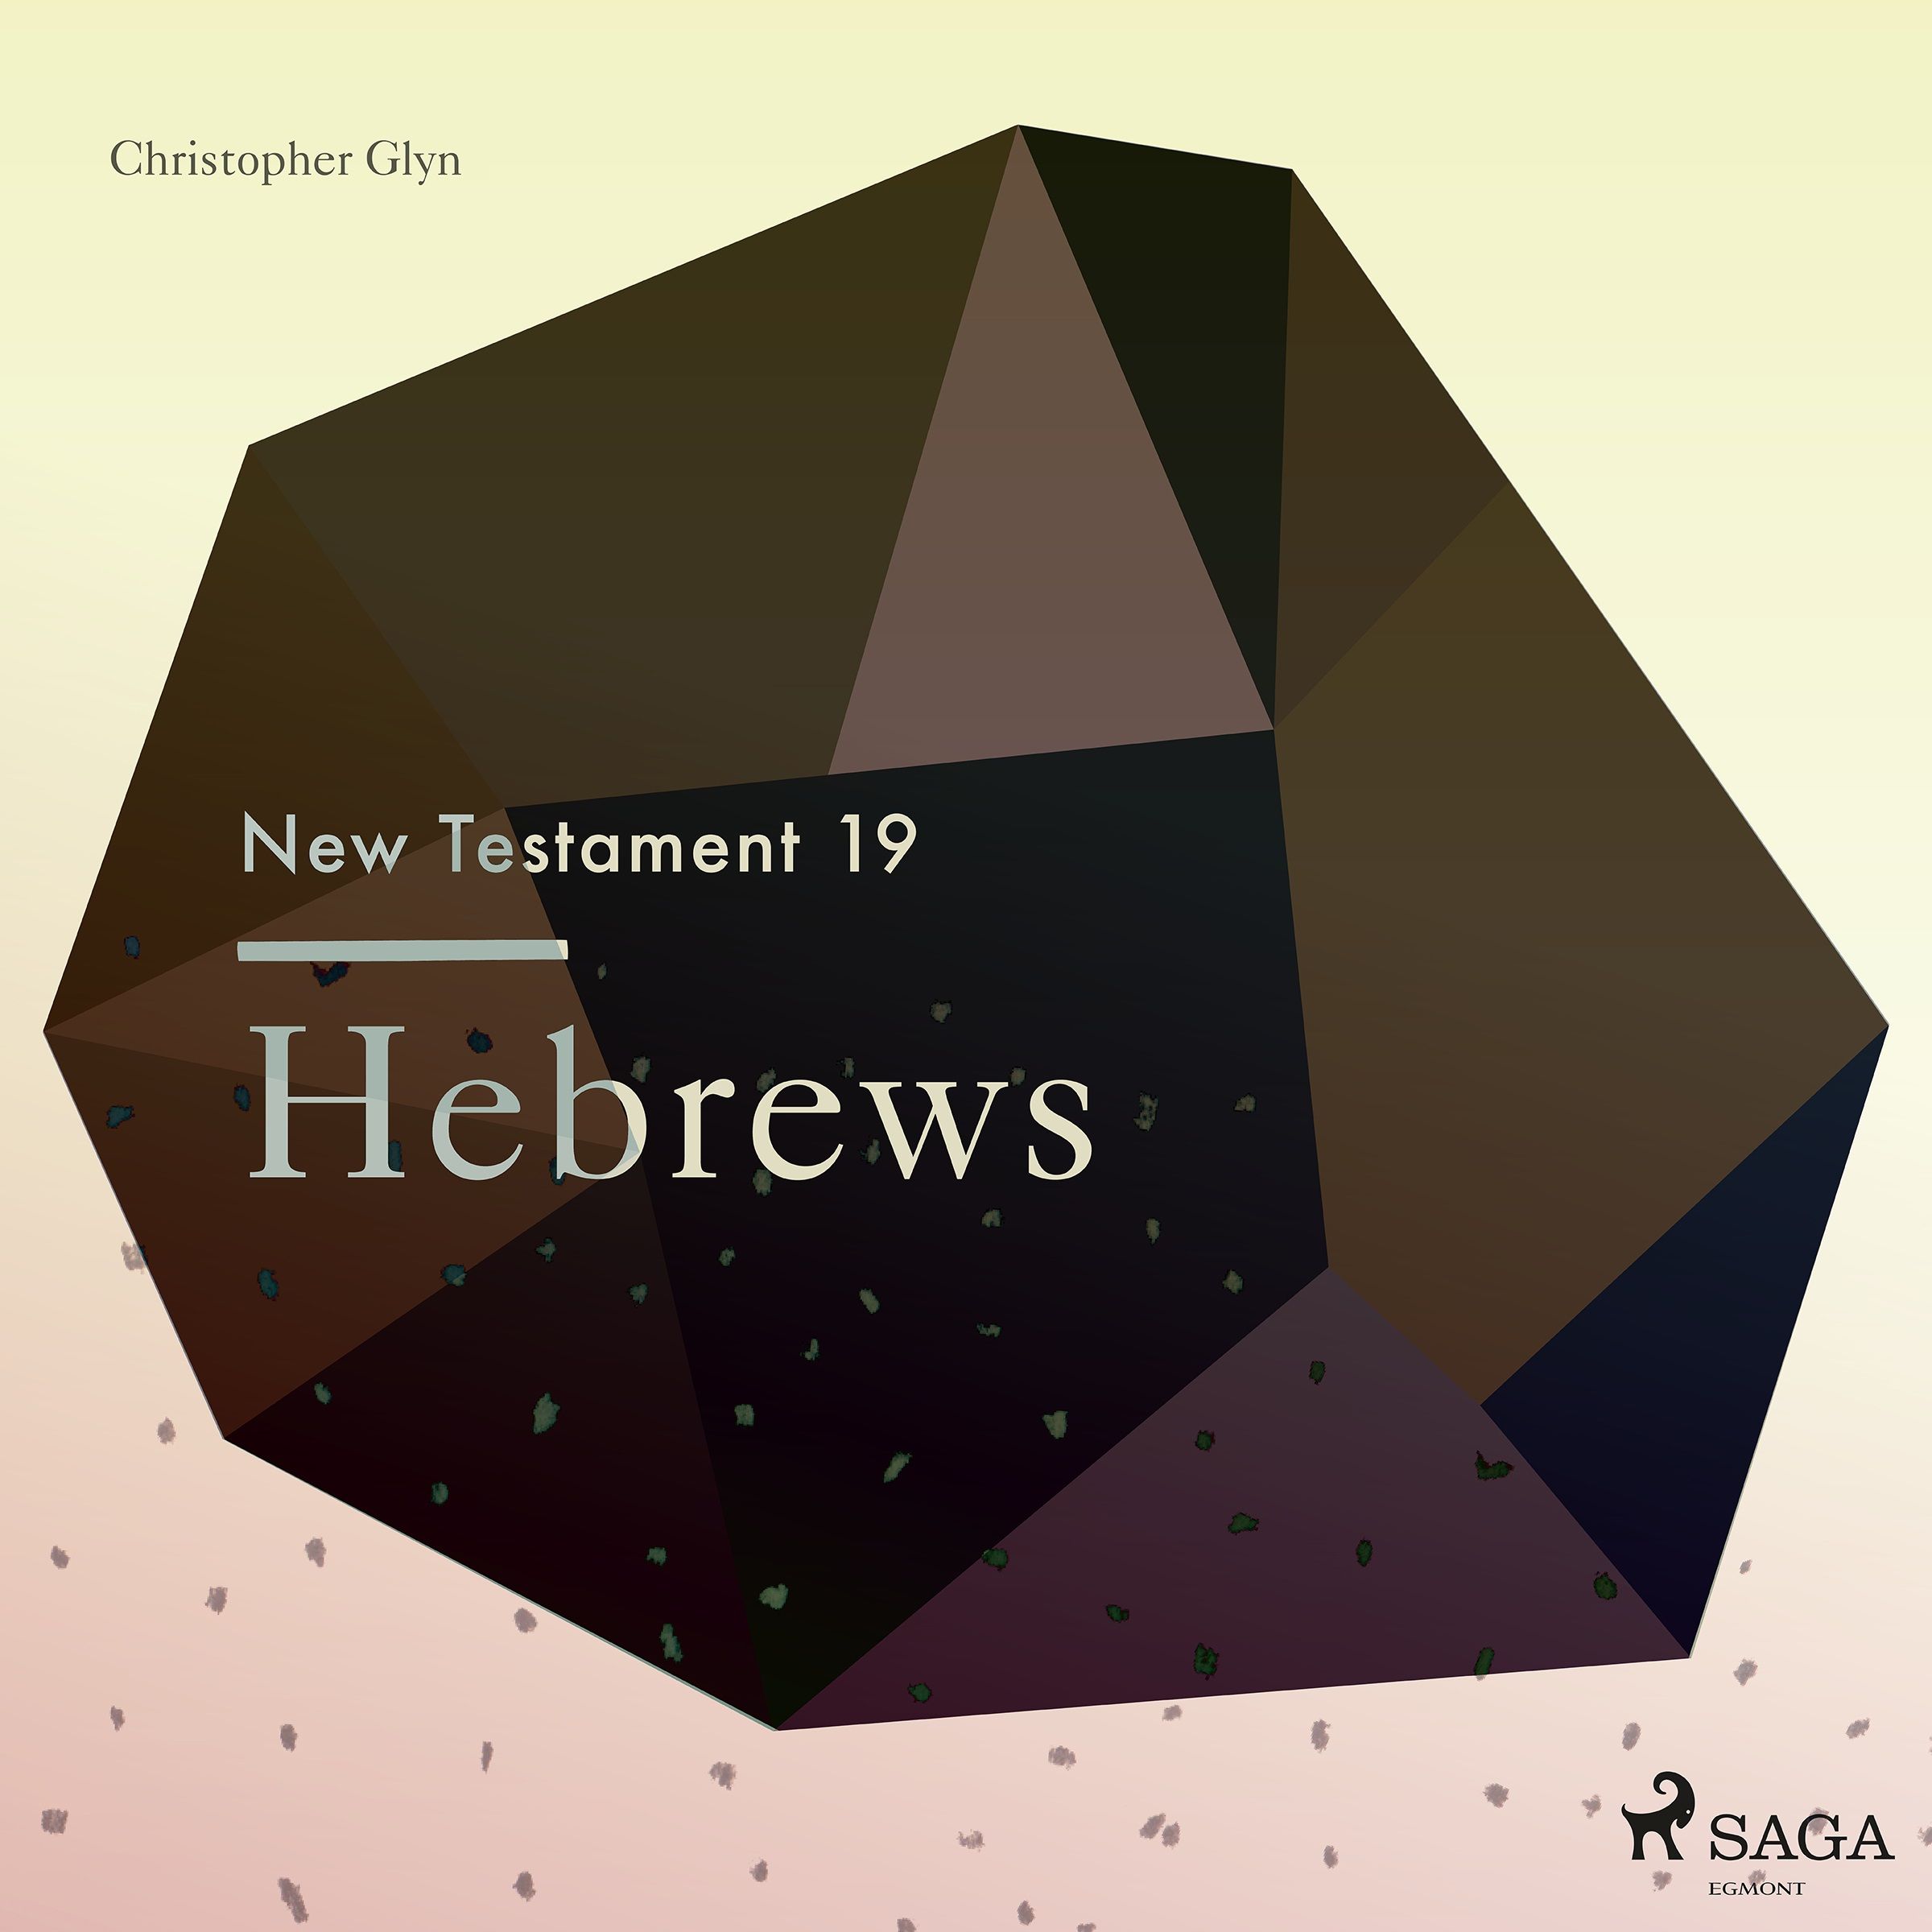 The New Testament 19 - Hebrews, lydbog af Christopher Glyn